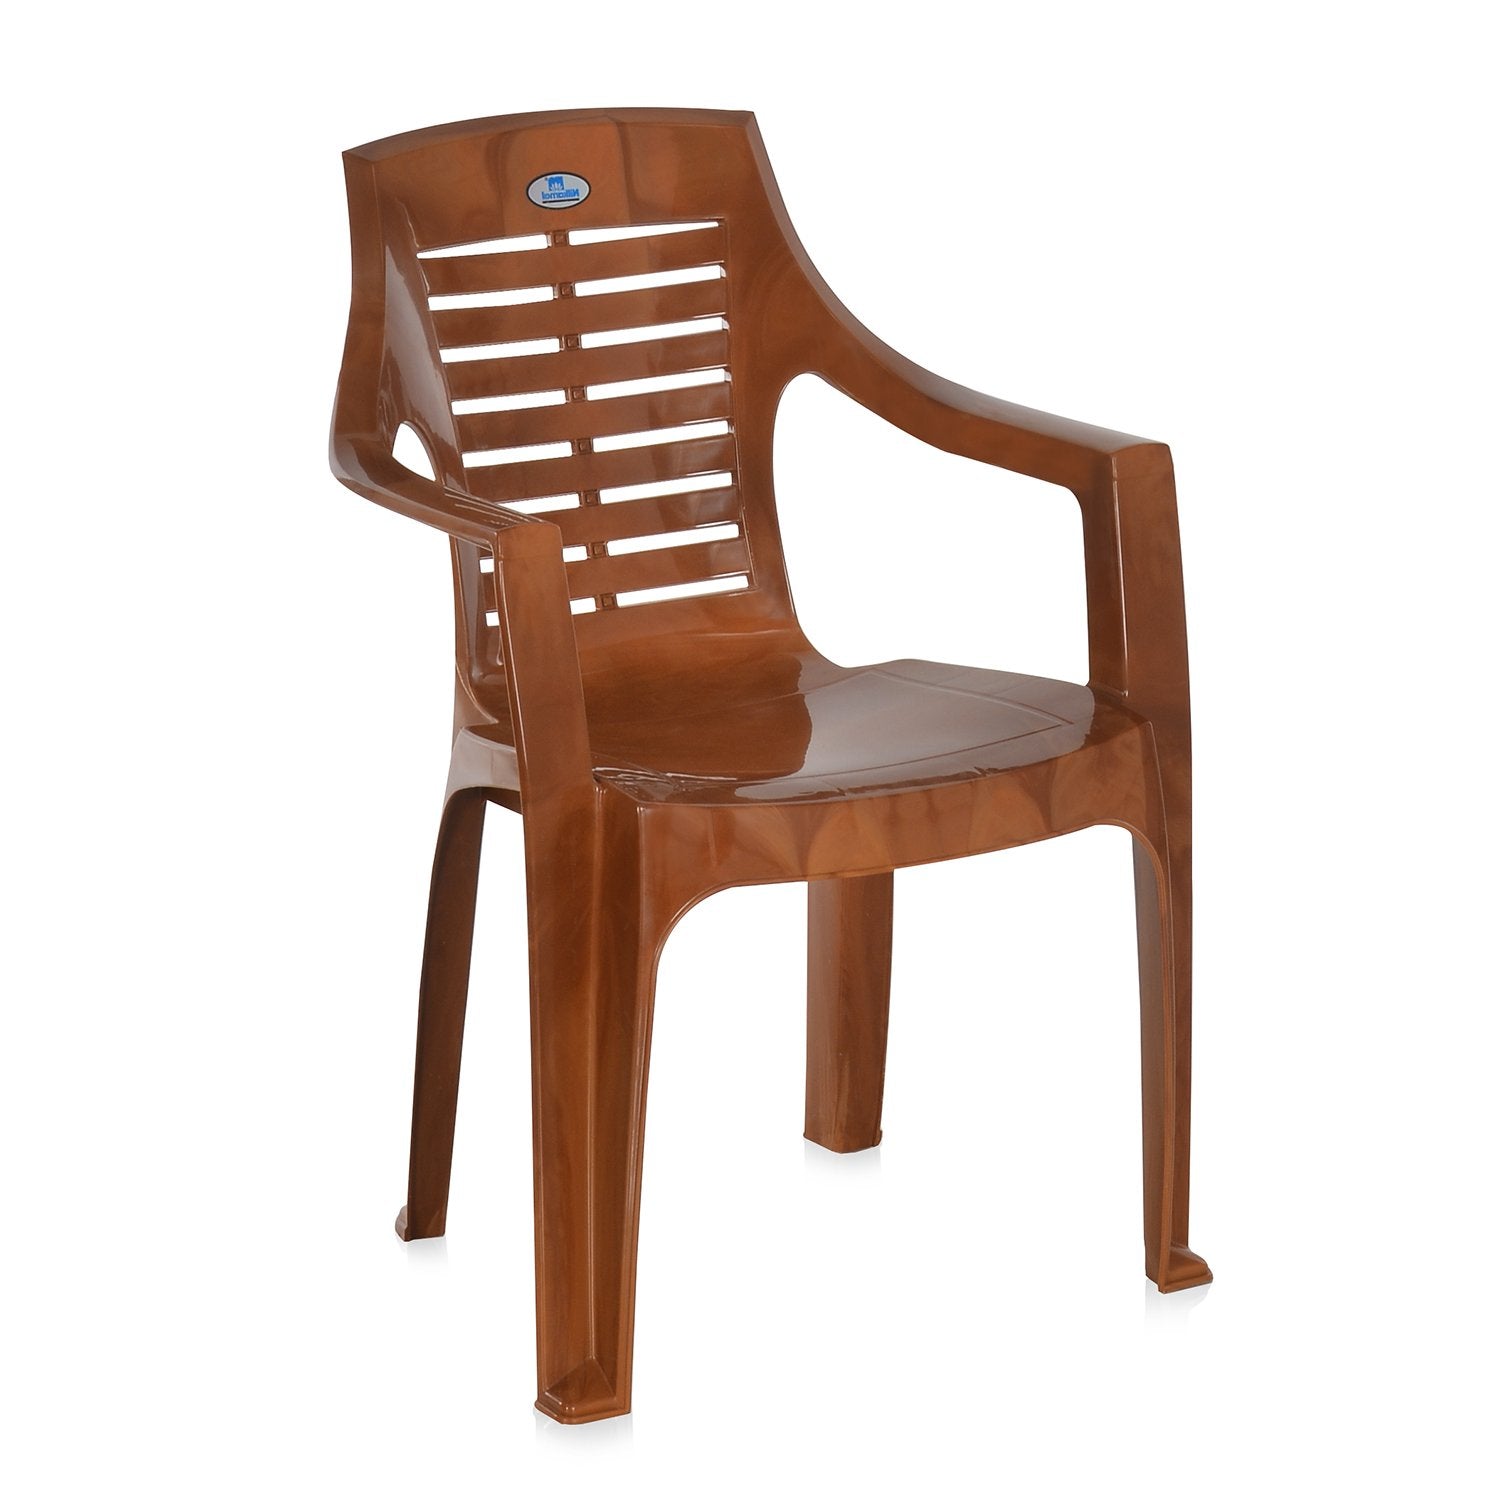 Nilkamal CHR 6020 Mid Back Chair with Arm (Pear Wood)